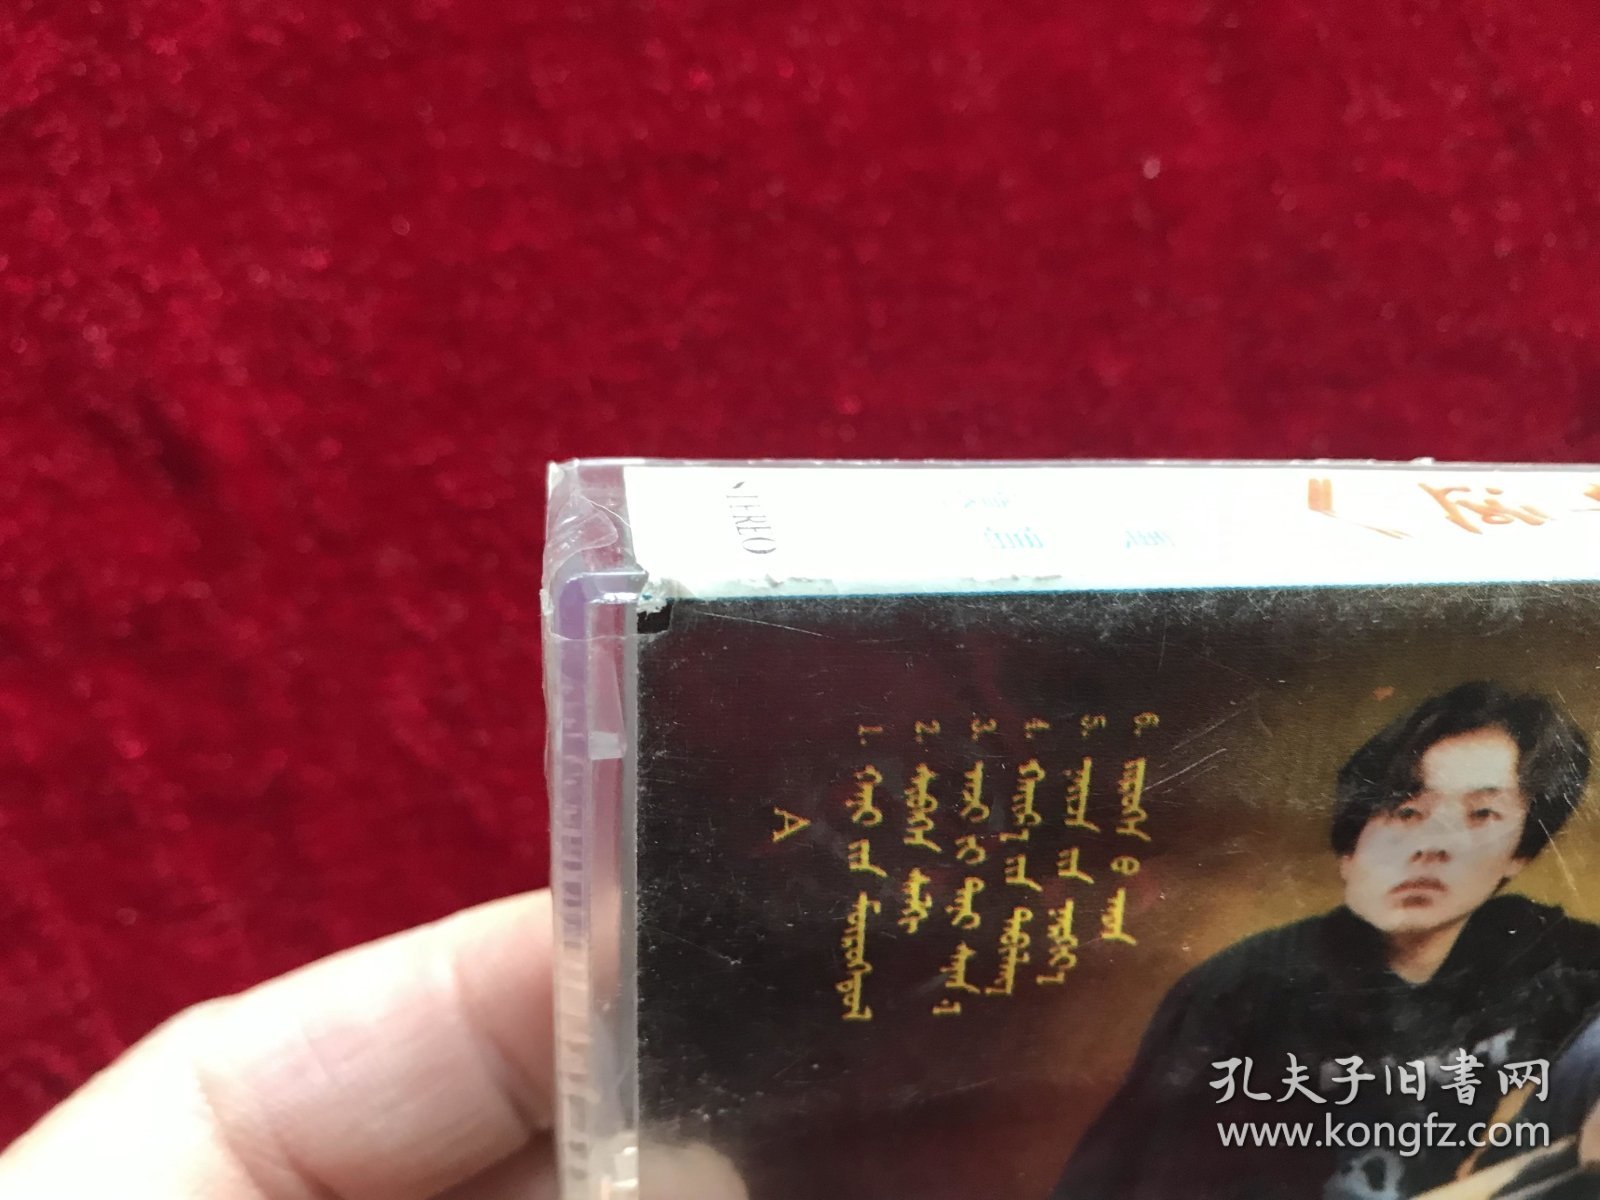 孟克吉日嘎拉演唱《爱的命运》蒙语专辑